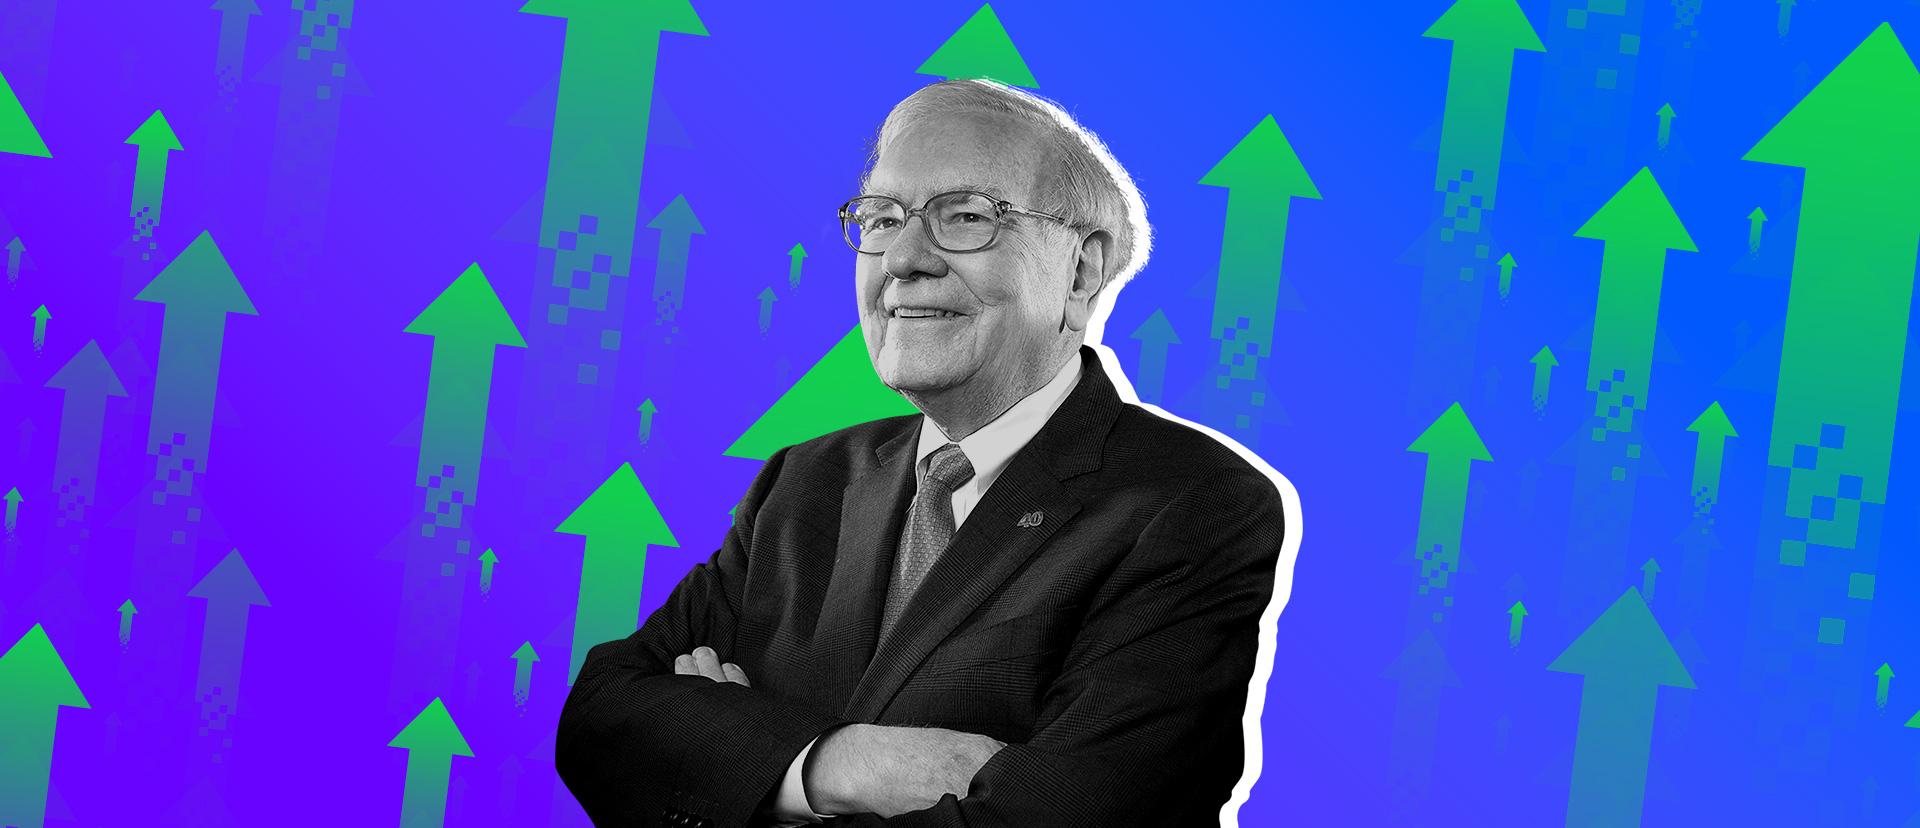 Milliseid ettevõtteid Warren Buffet peab tähelepanu väärivaks?